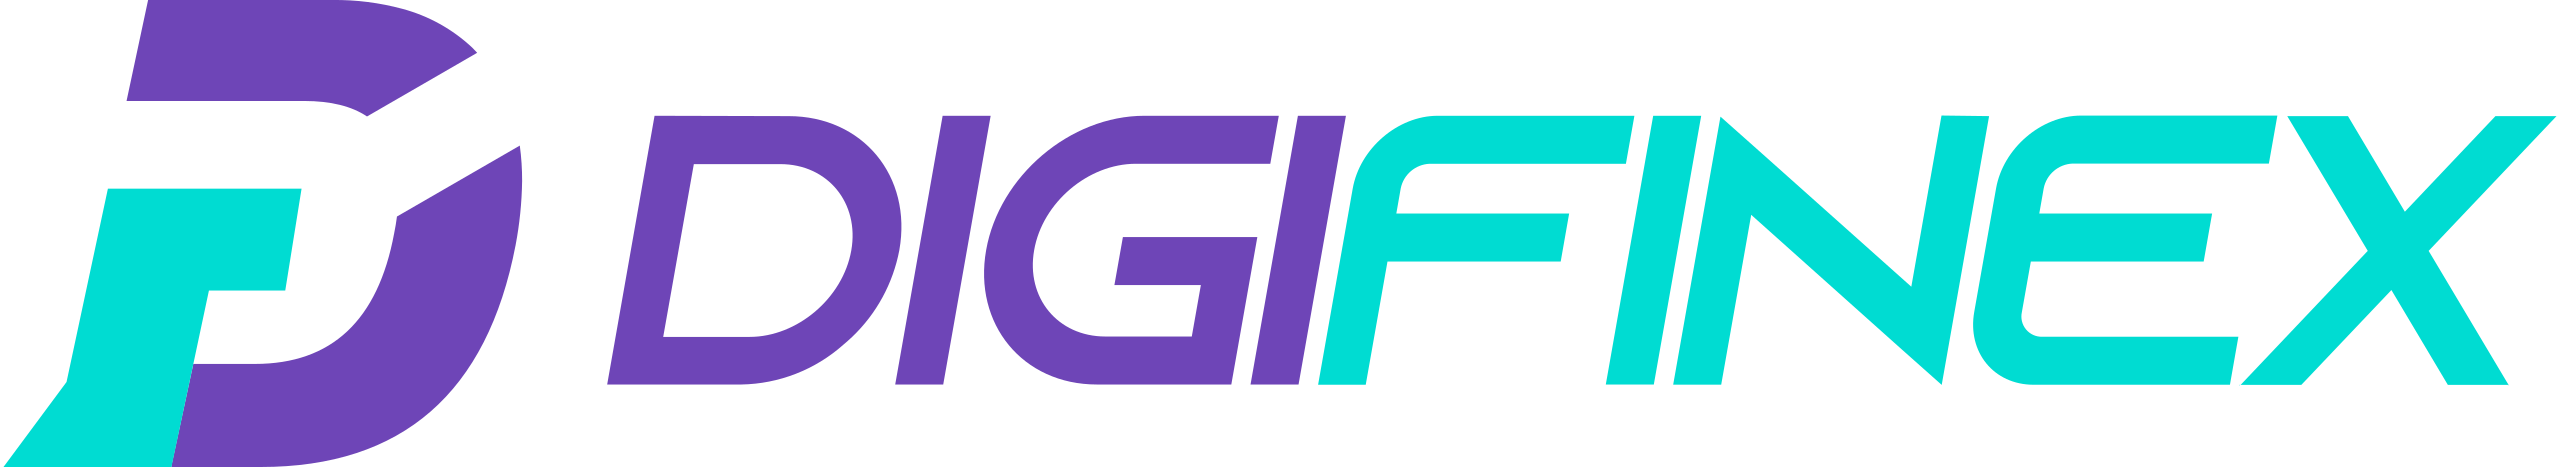 digifinex logo